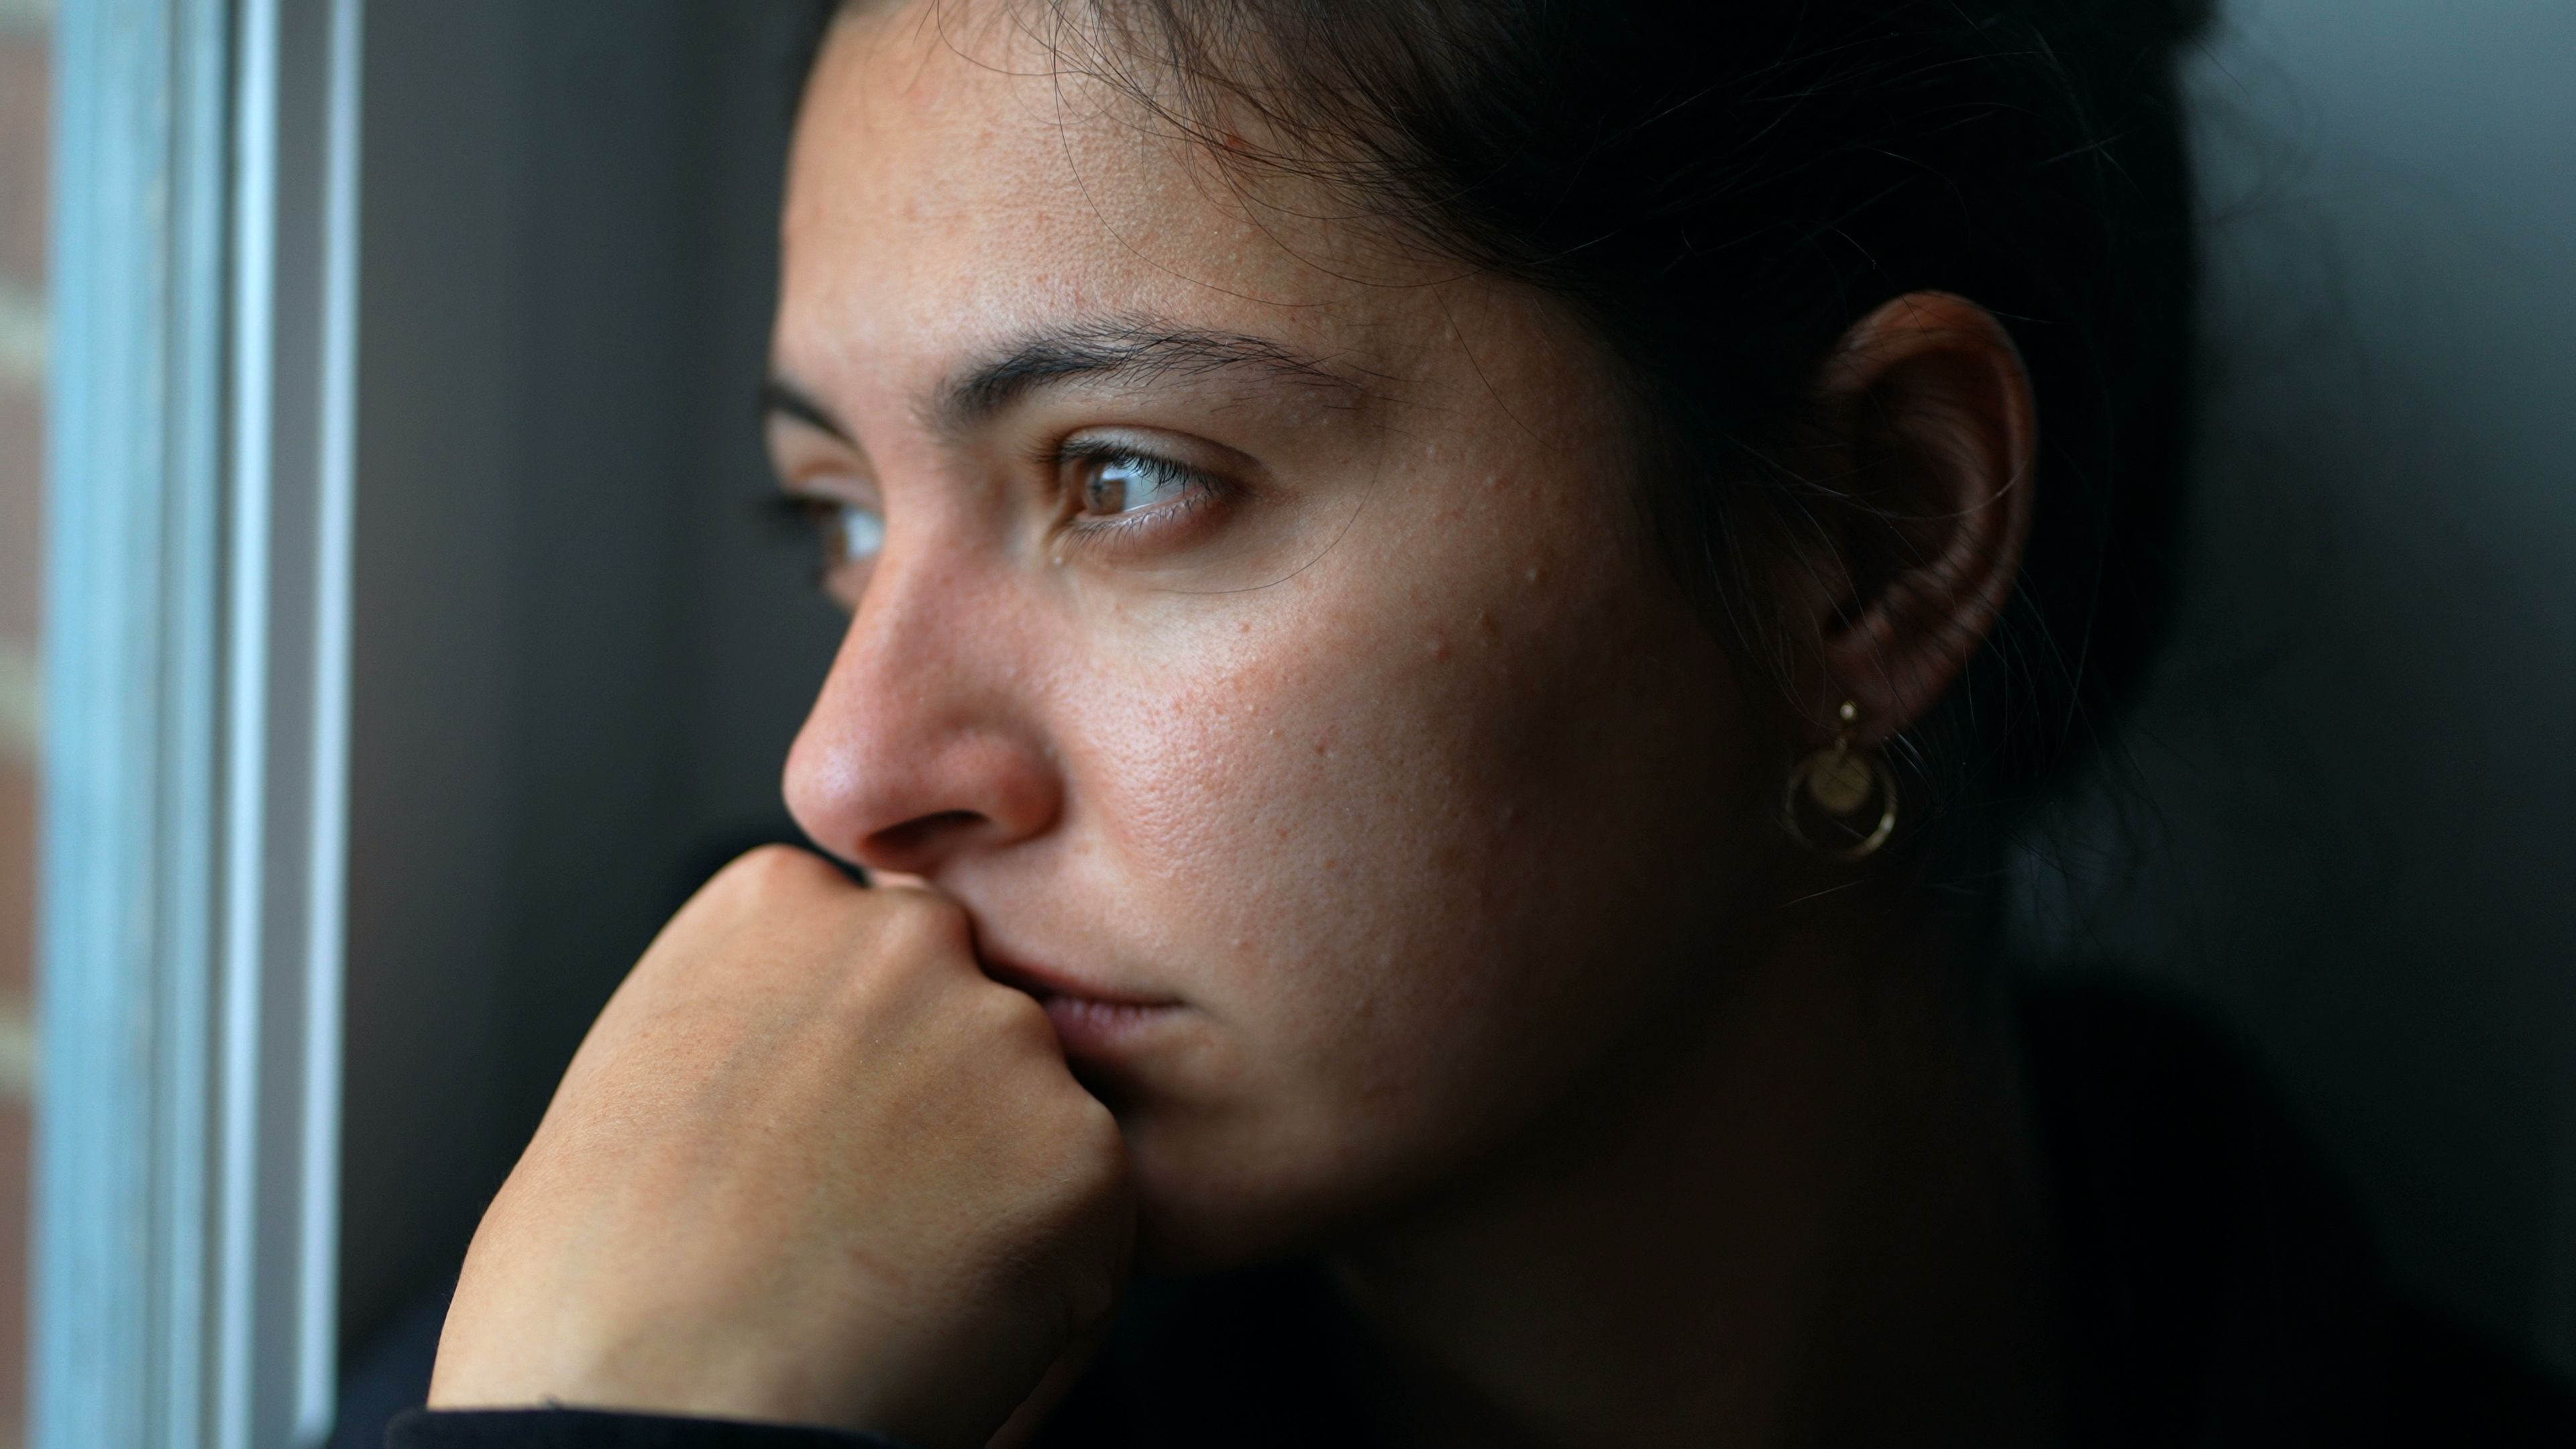 Une jeune femme perdue dans ses pensées qui regarde par la fenêtre | Source : Shutterstock